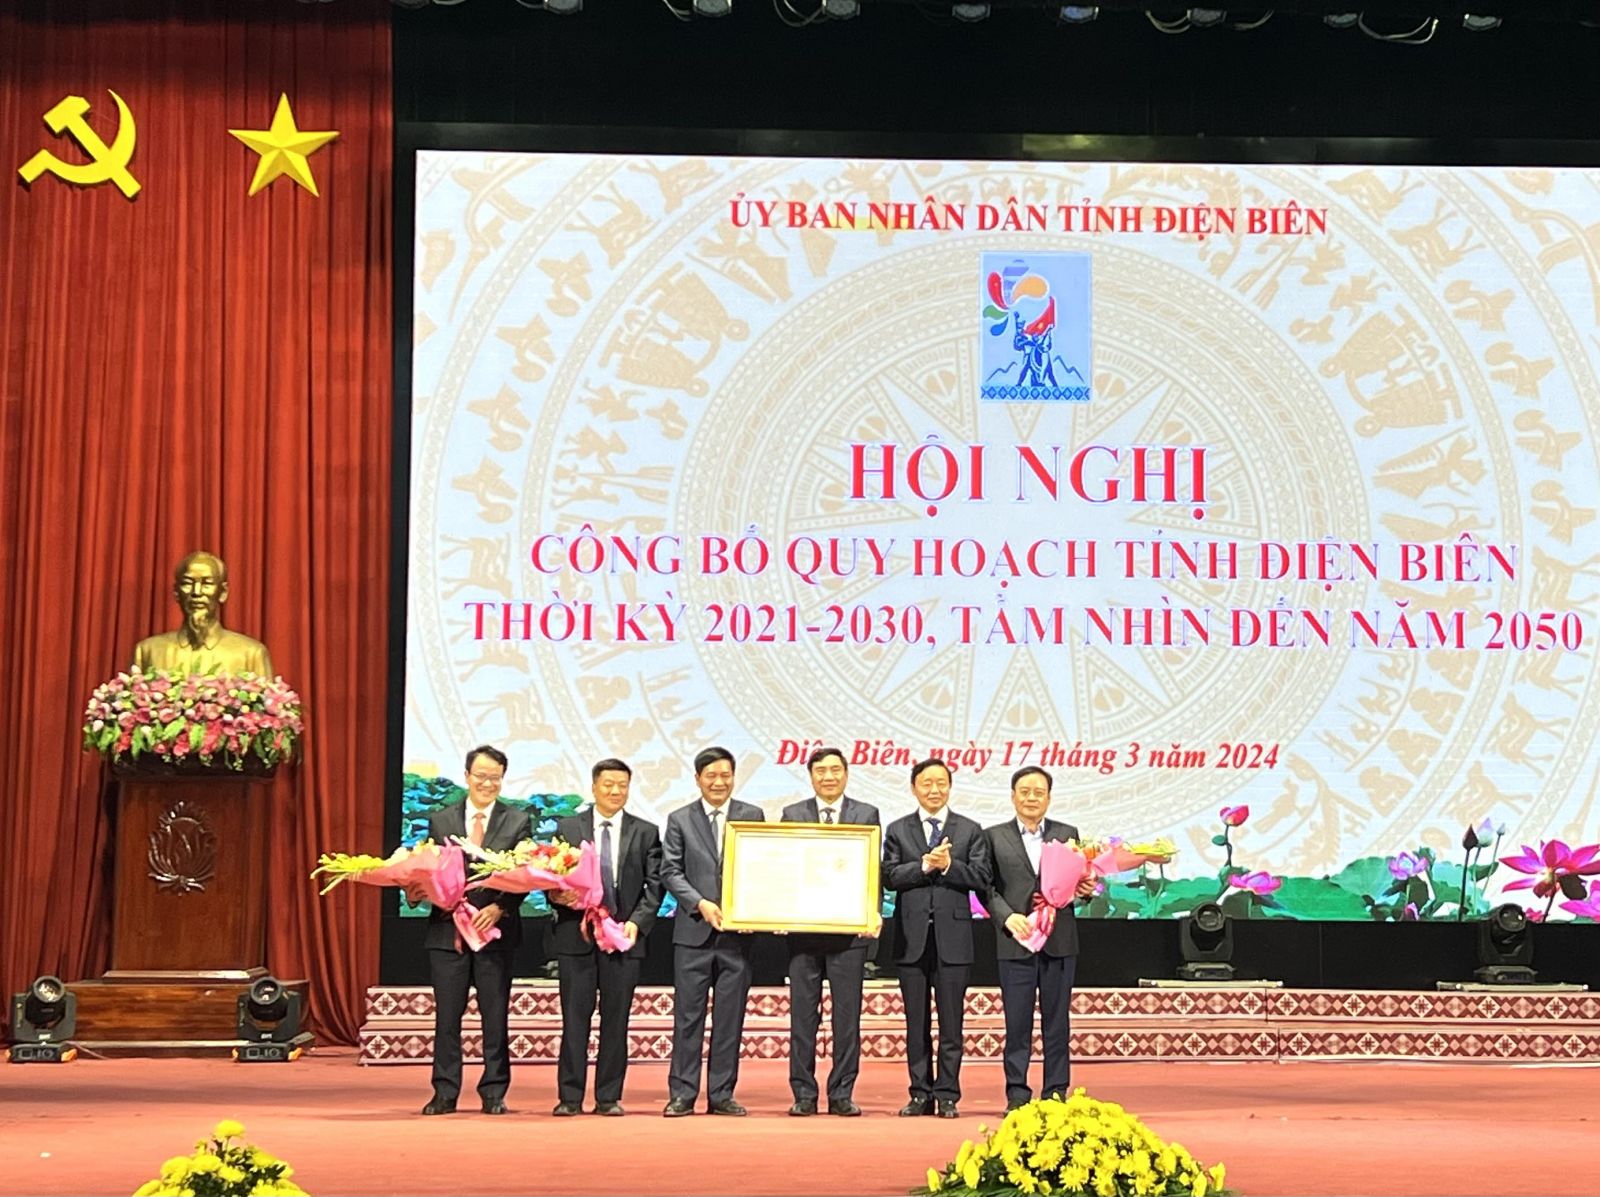 Phó Thủ tướng Trần Hồng Hà trao Quyết định Quy hoạch tỉnh Điện Biên thời kỳ 2021- 2030, tầm nhìn đến năm 2050.